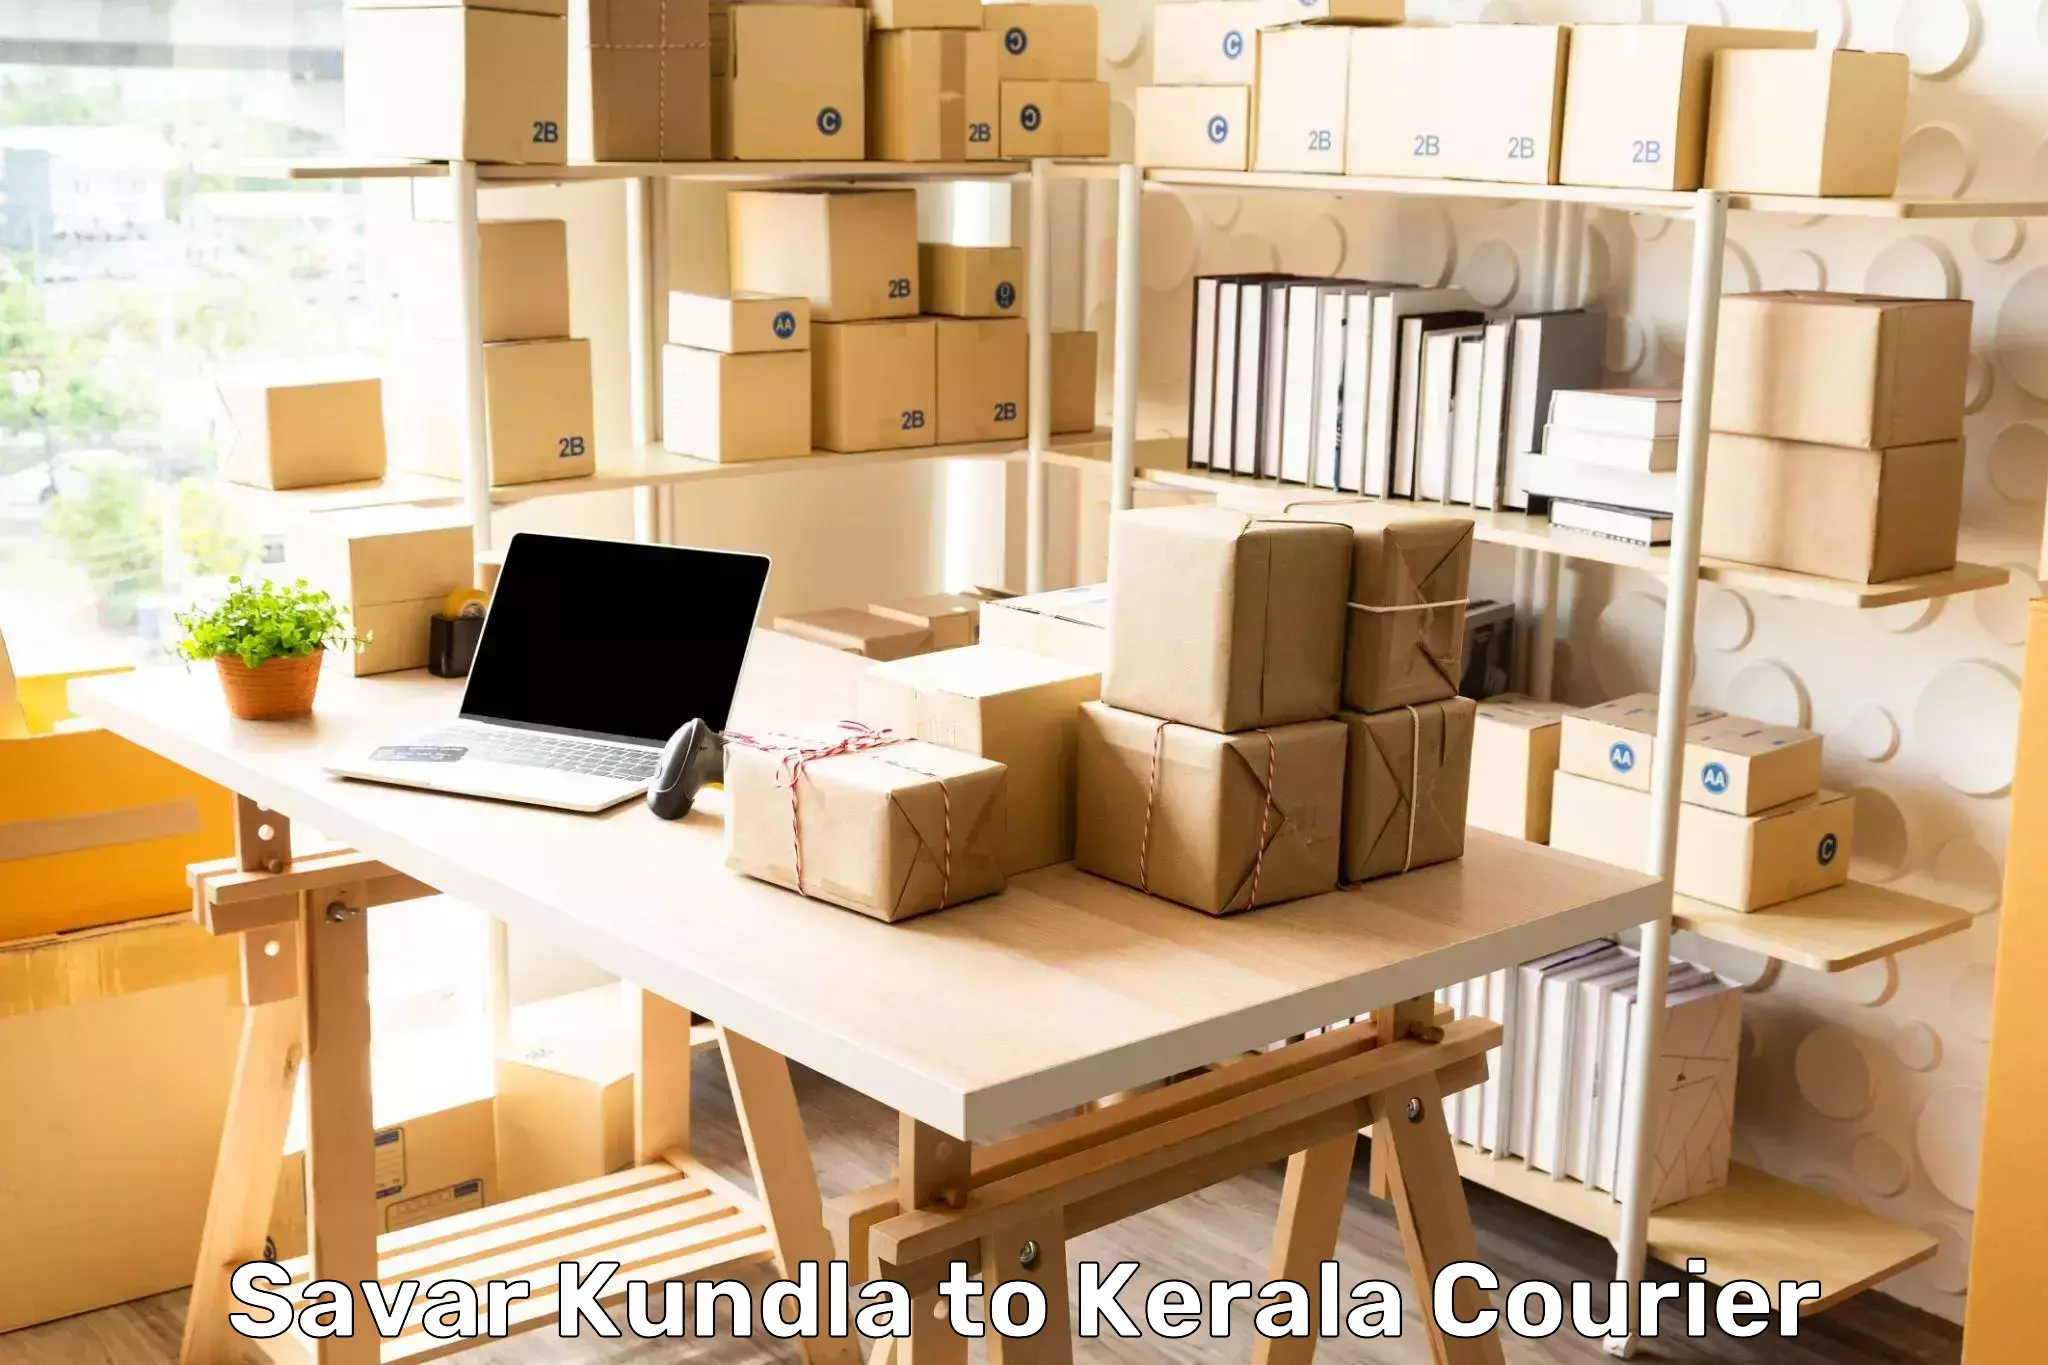 Urgent courier needs Savar Kundla to Mananthavady